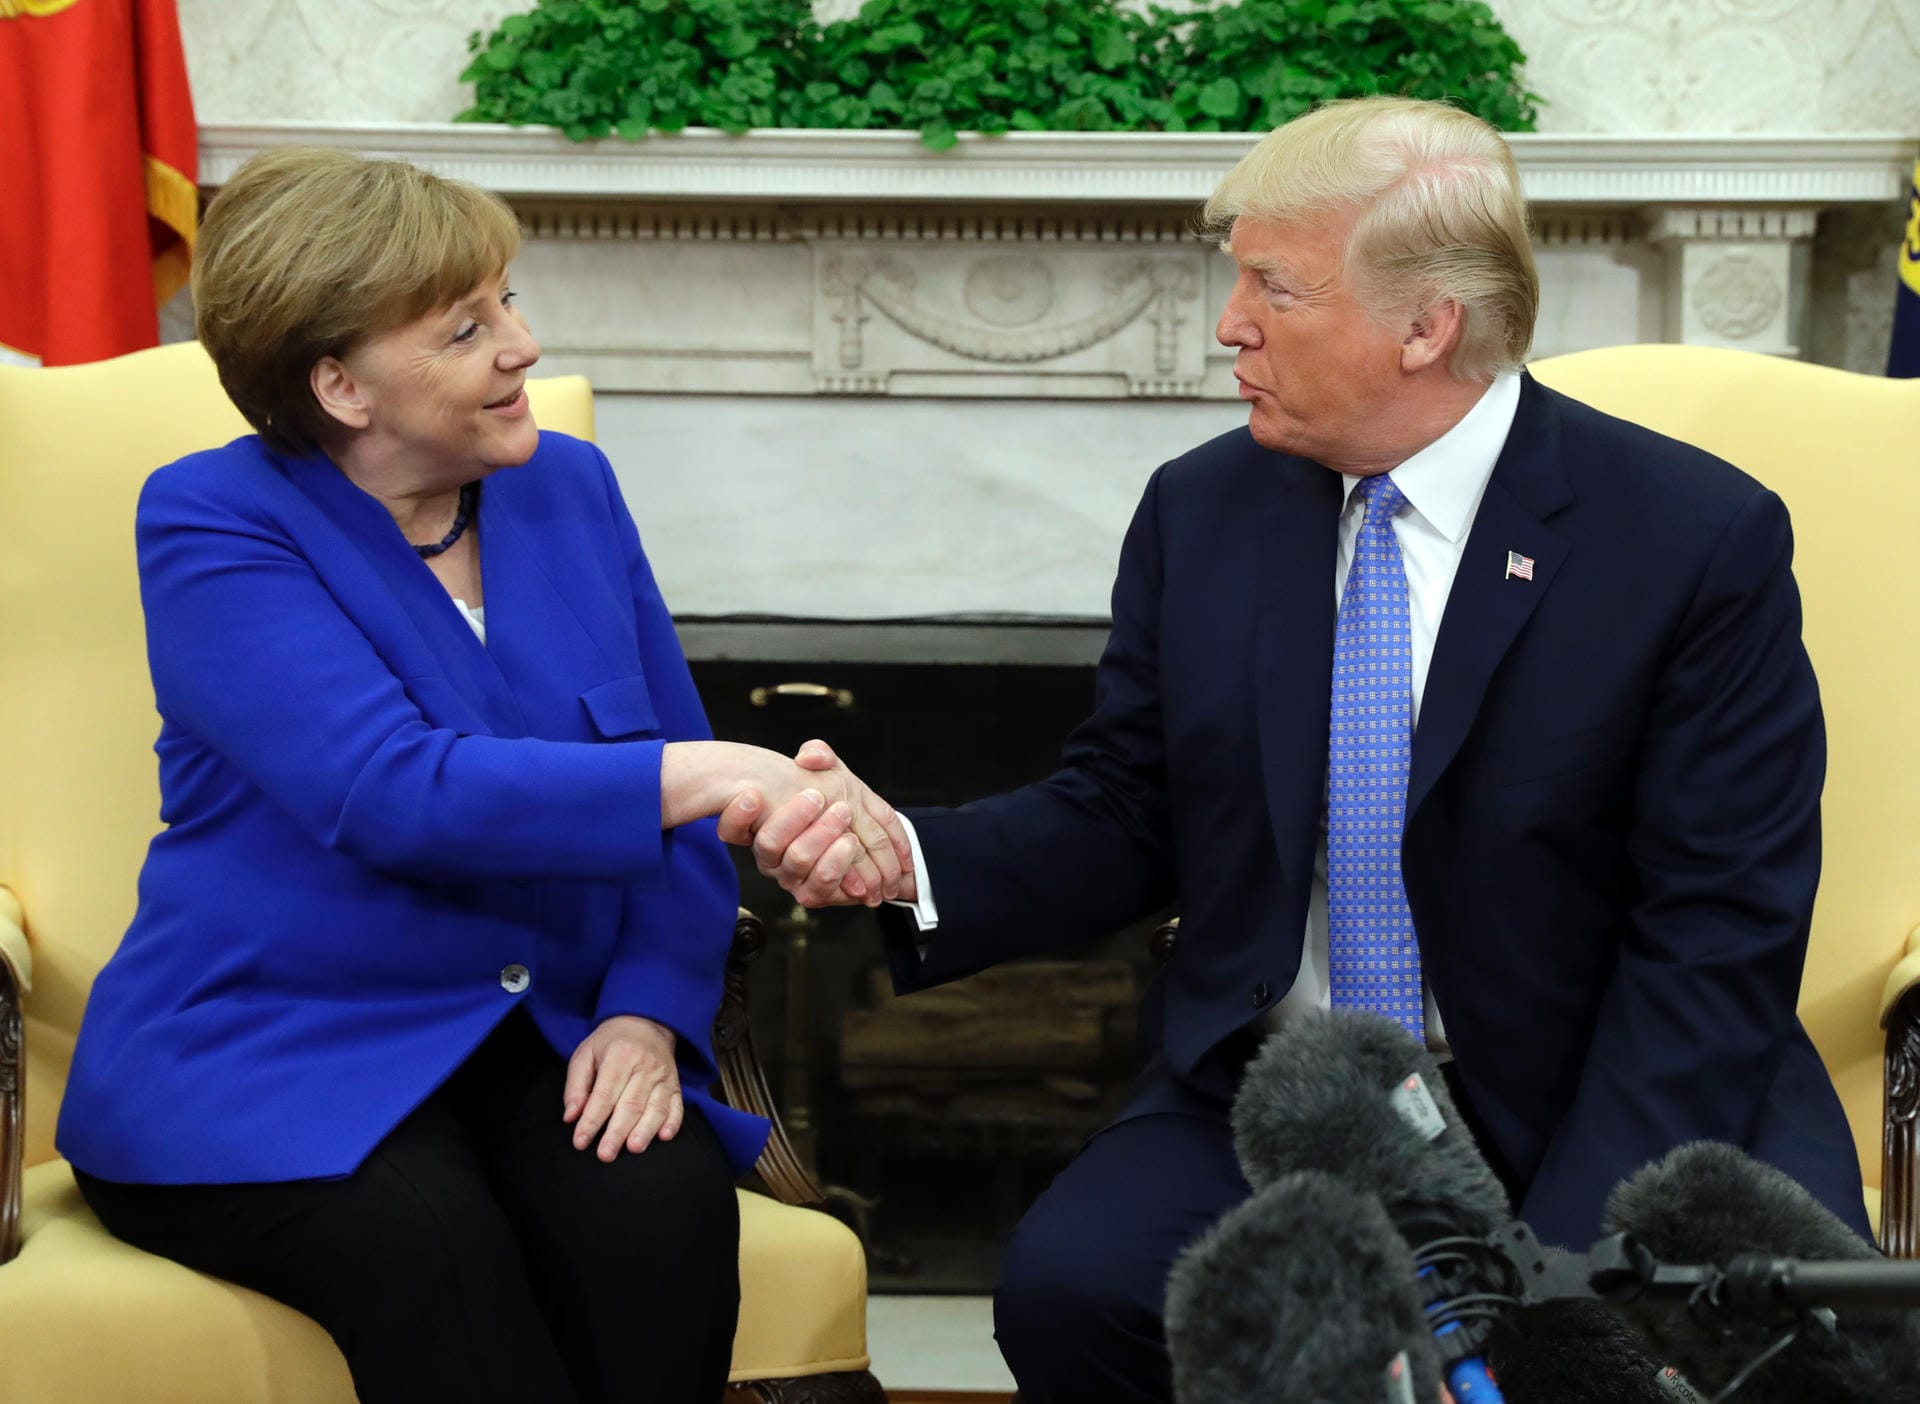 Während beim Ersten Treffen nur wiederwillig die Hand gereicht wurde, kam der Handshake diesmal von Donald Trump: "Wir haben eine sehr großartige Beziehung", Angela Merkel ist eine "außergewöhnliche Frau".